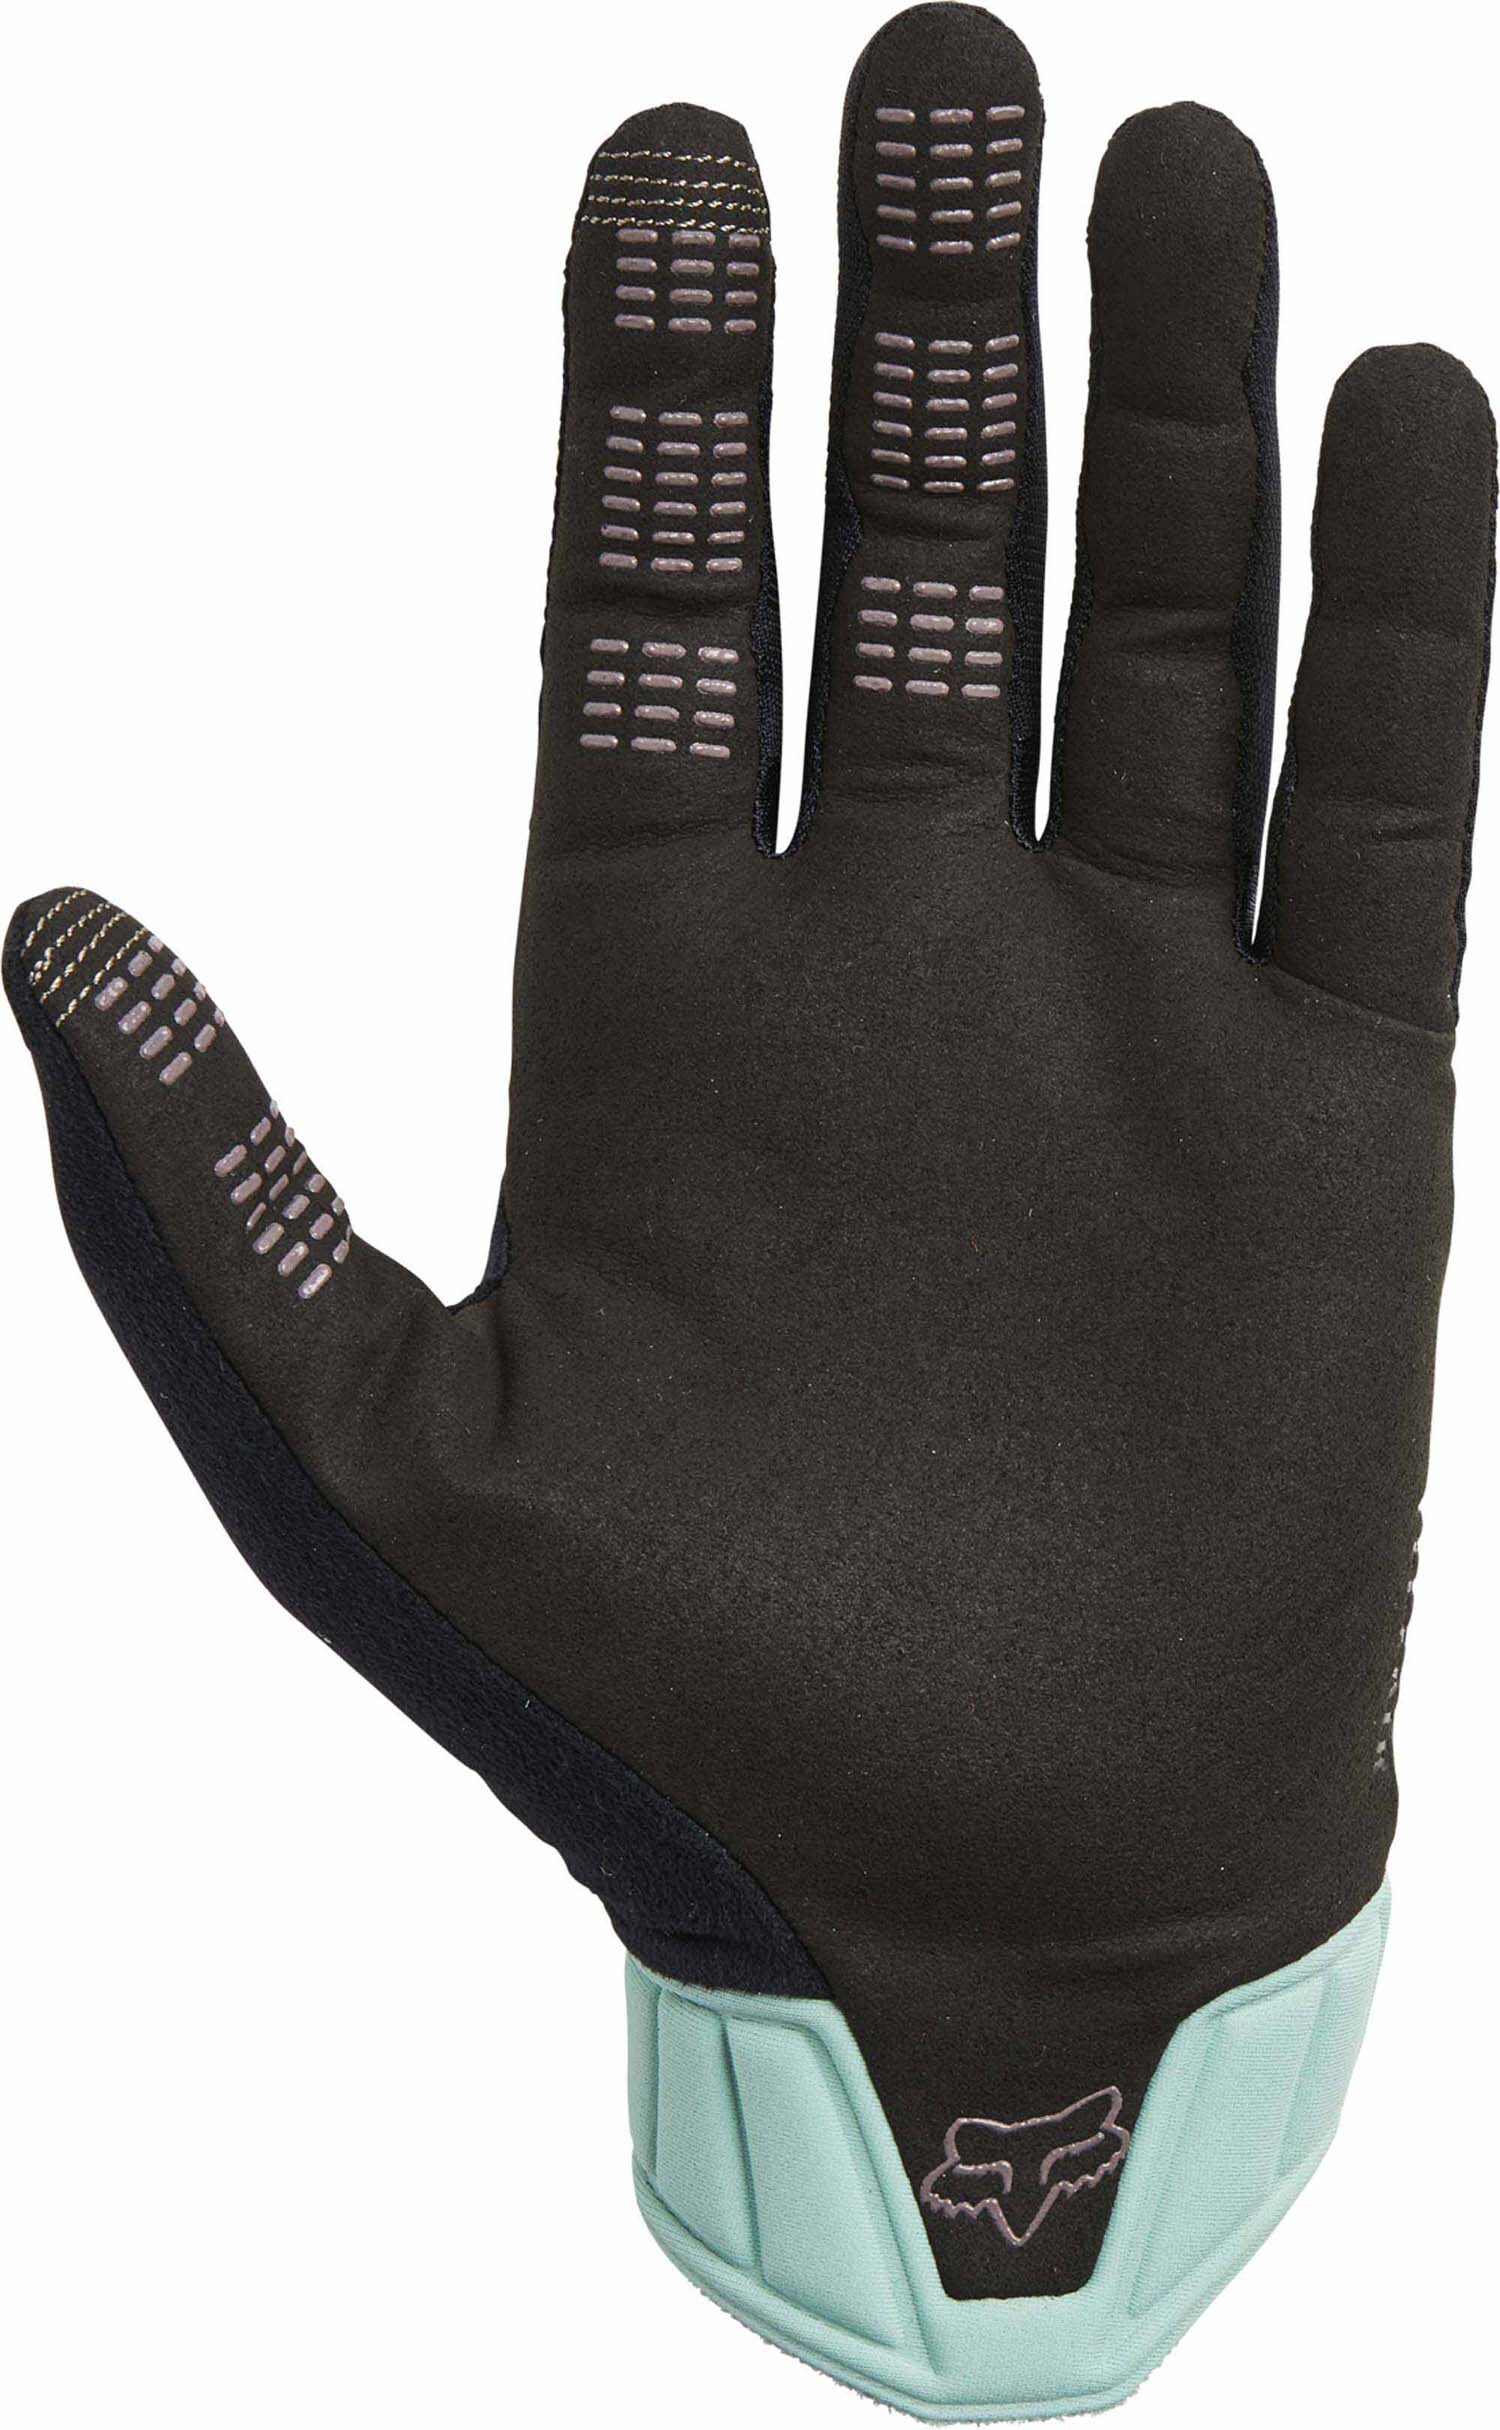 Flexair Ascent Glove